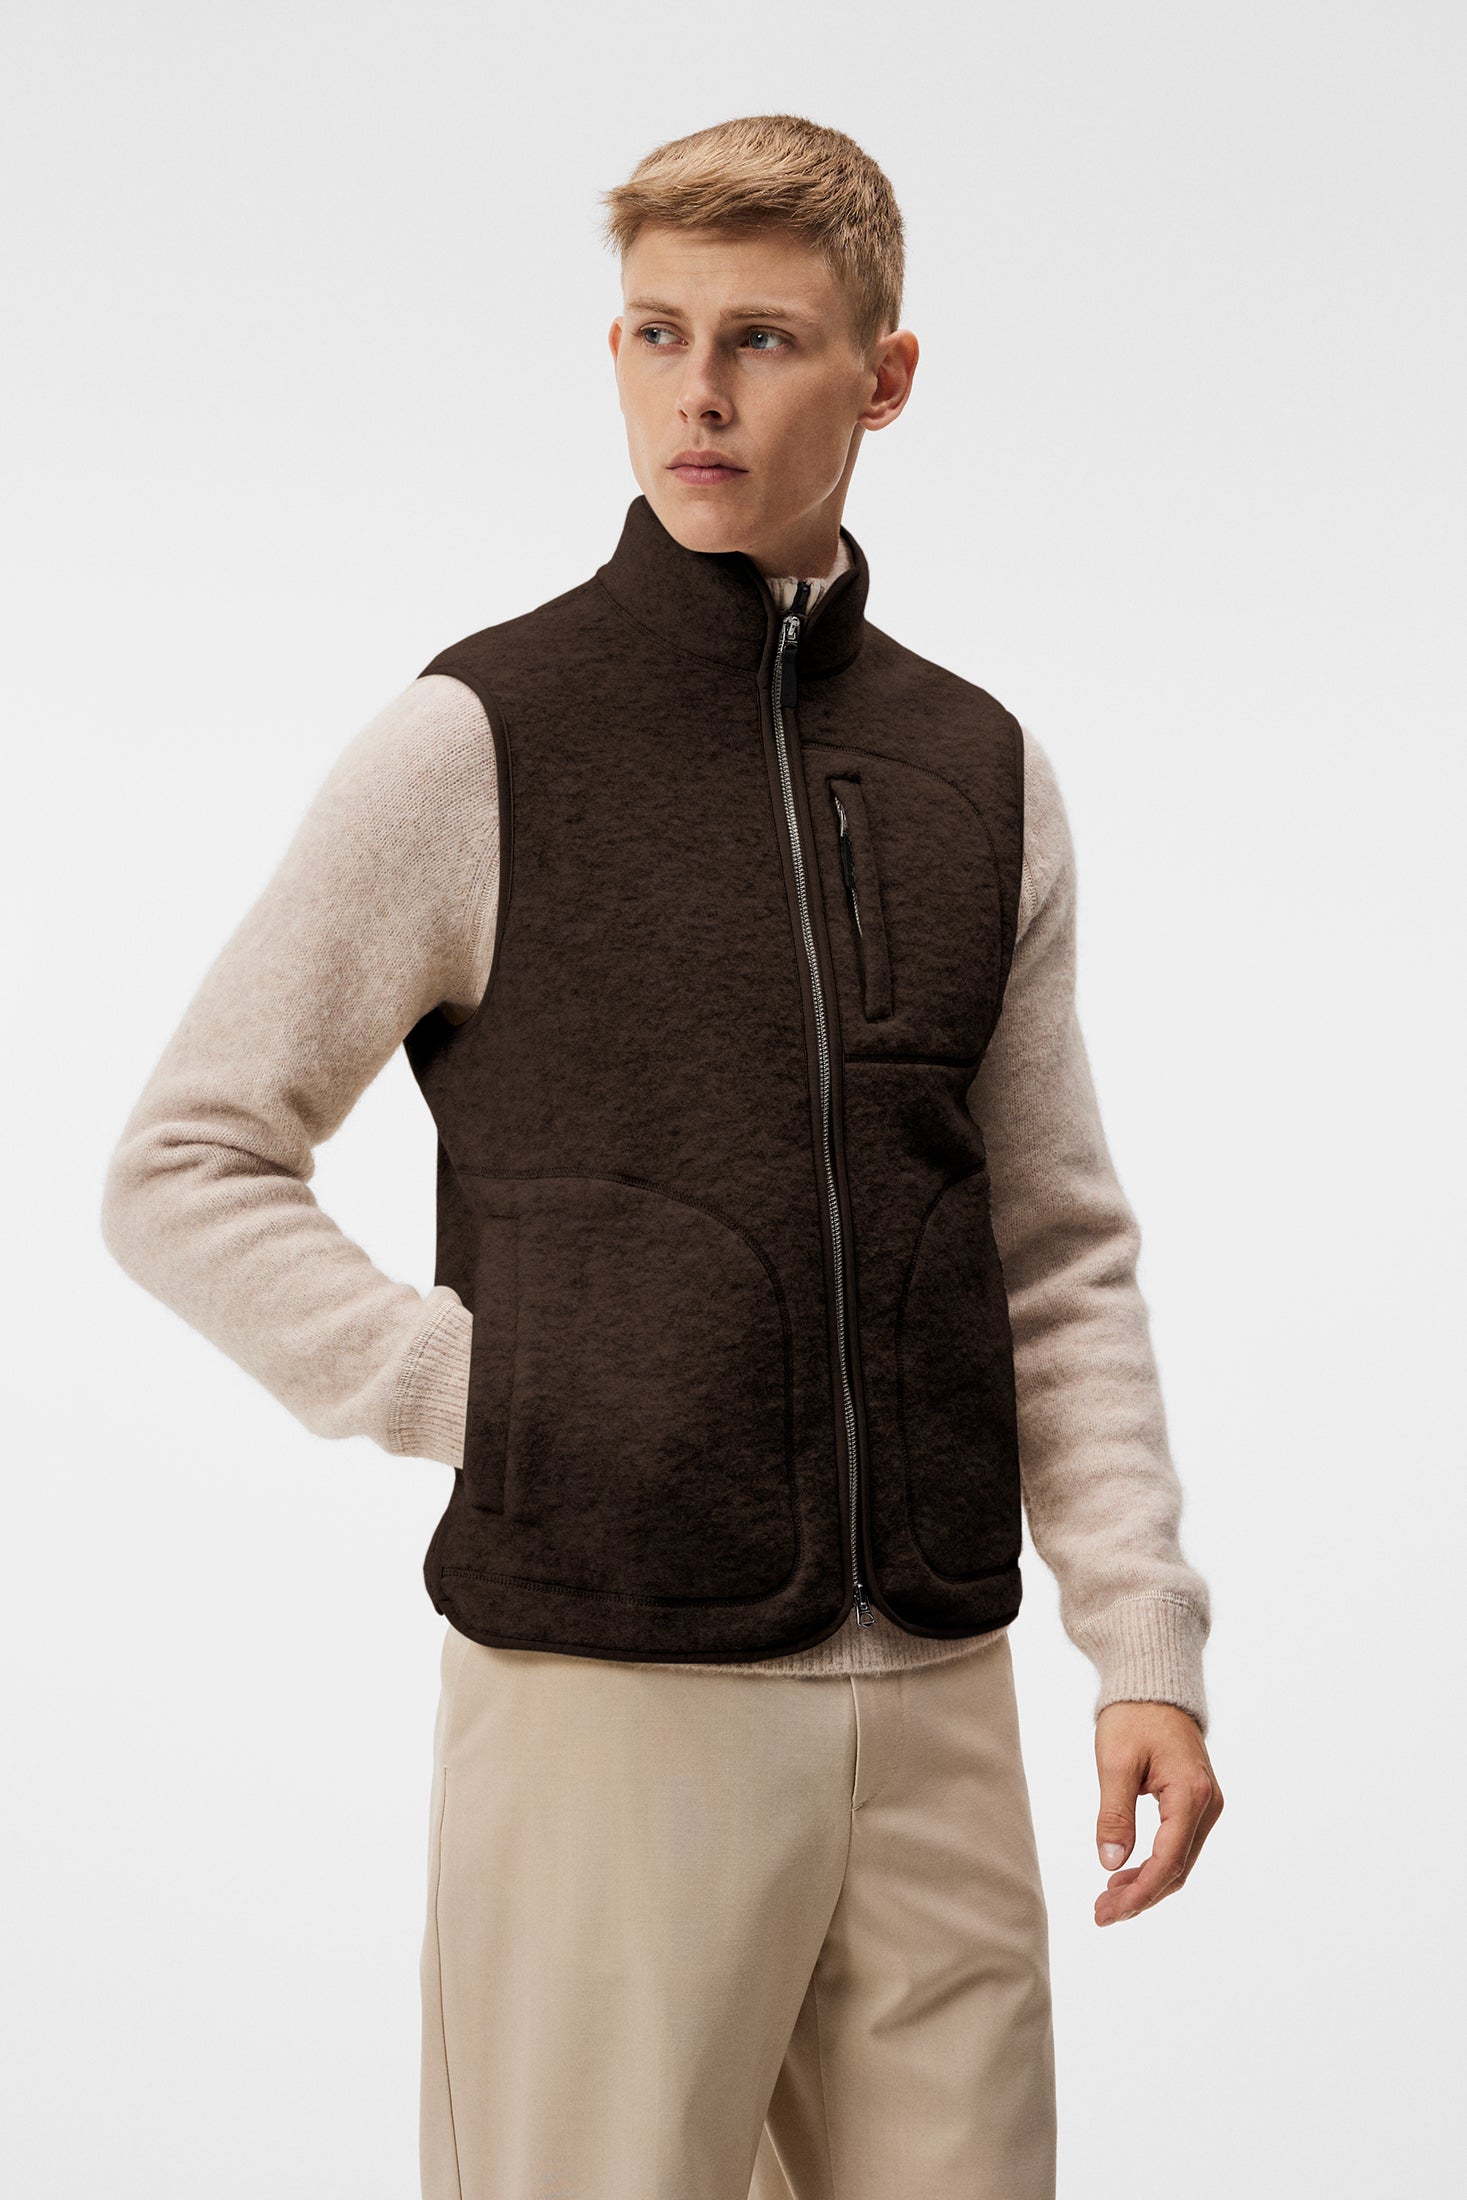 Duncan Wool Fleece Vest / Delicioso – J.Lindeberg